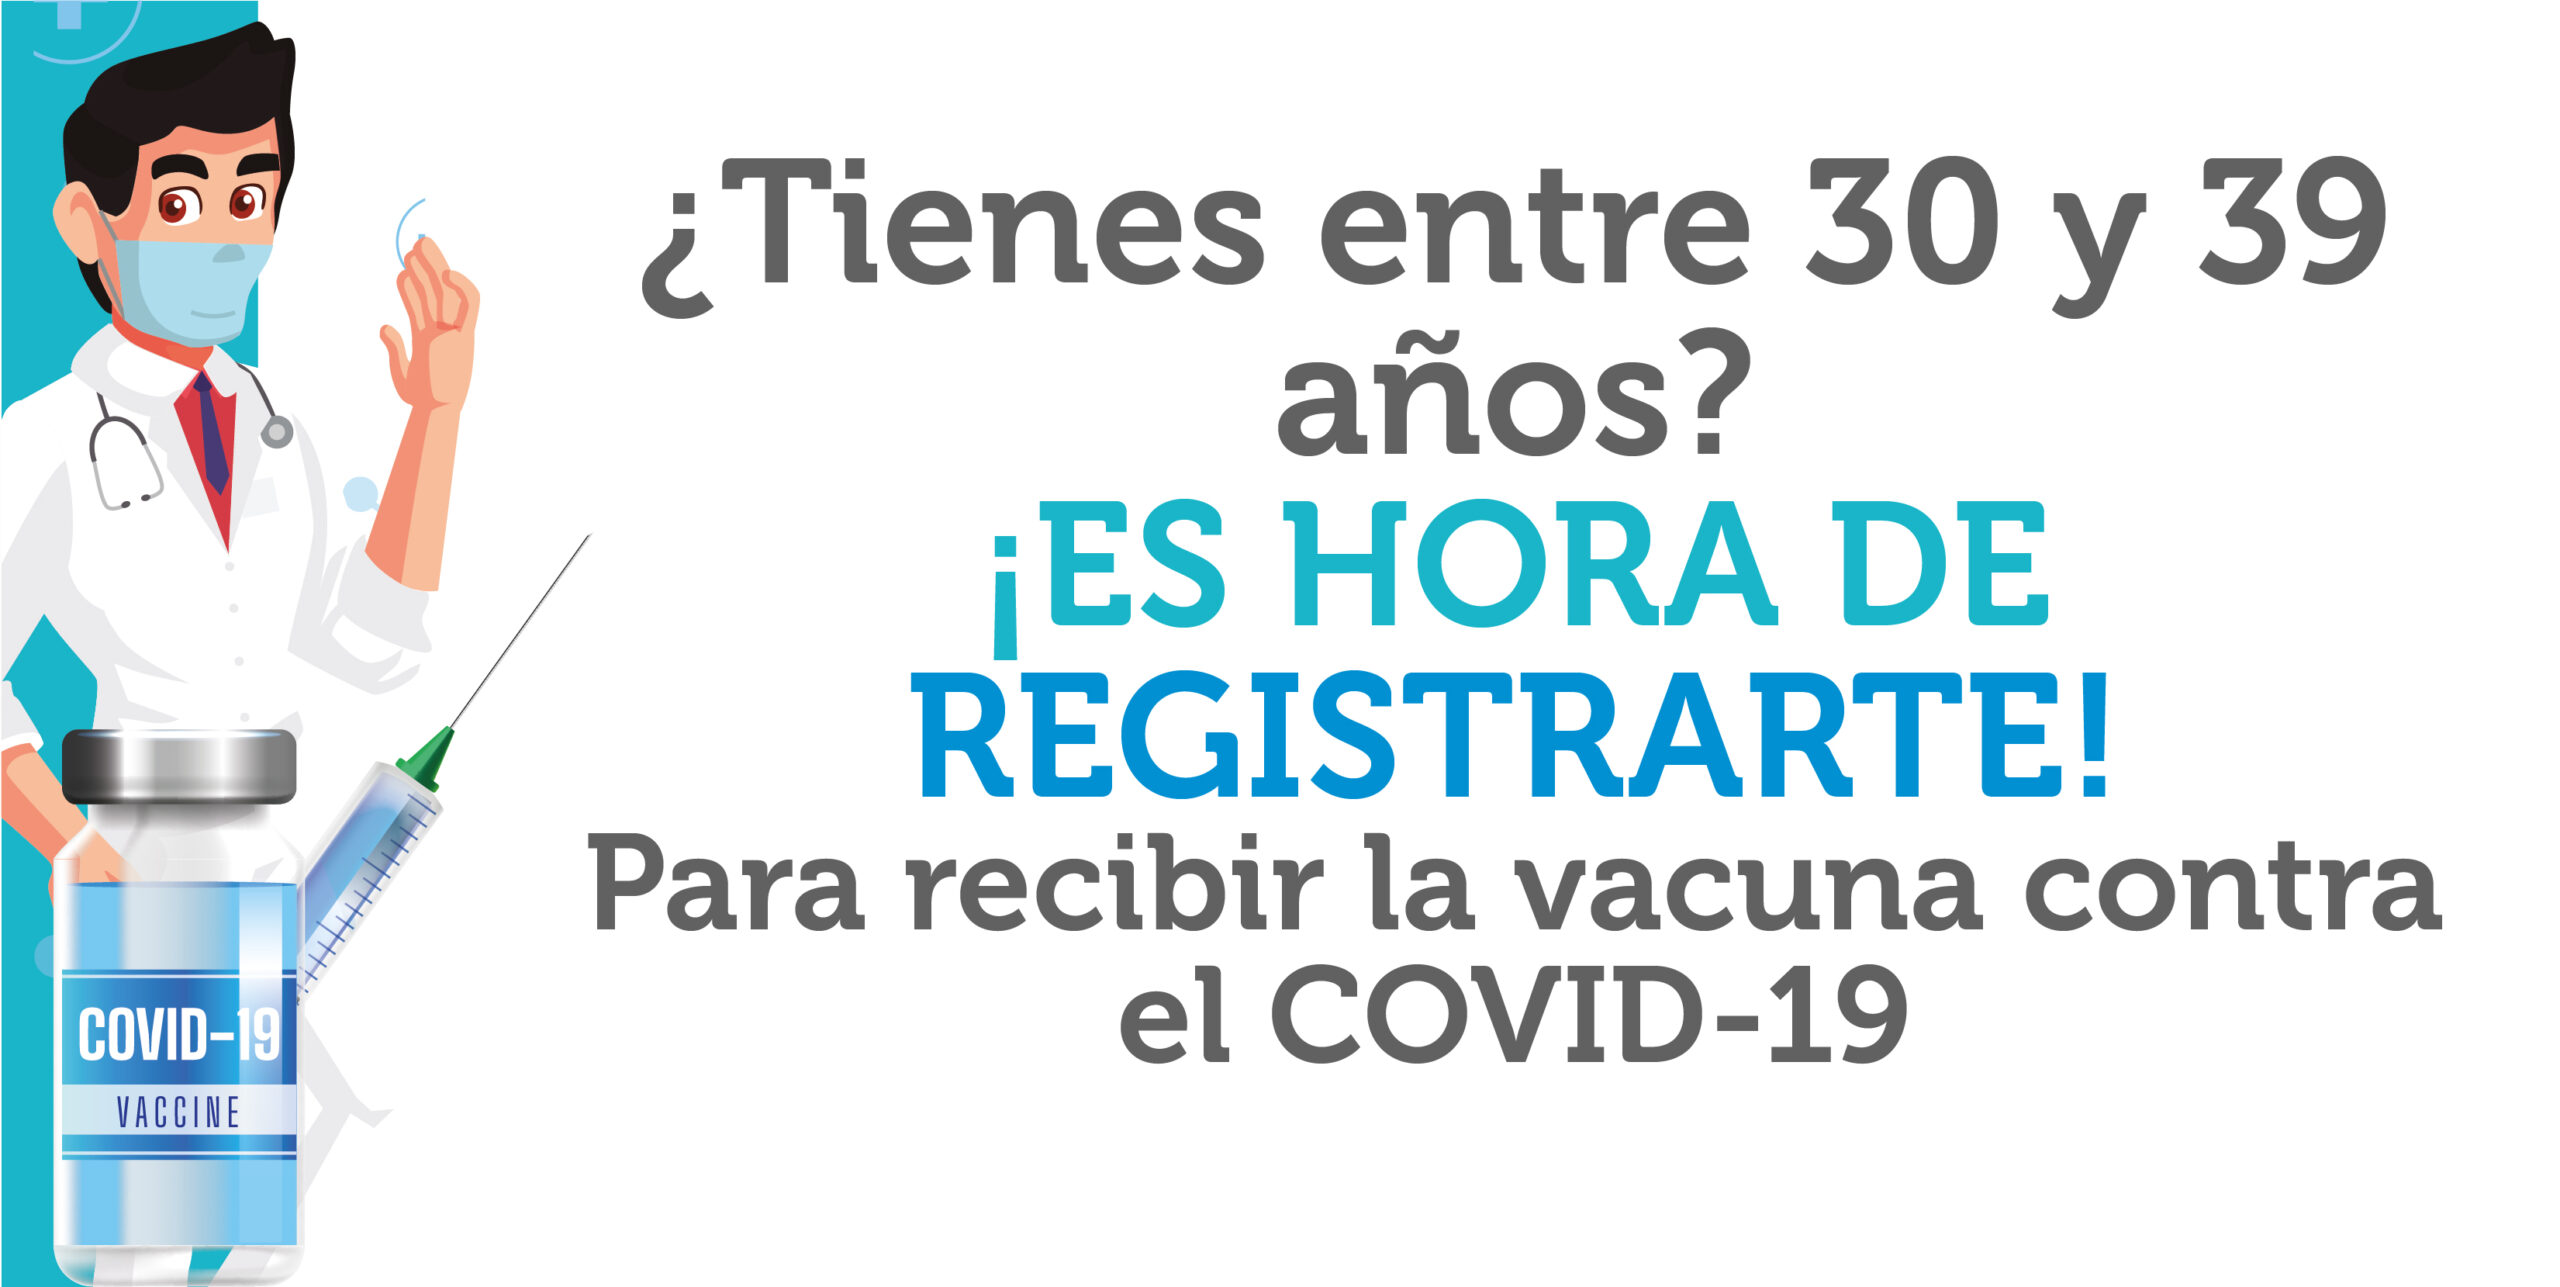 ¿Tienes entre 30 y 39 años? regístrate para recibir la vacuna contra el COVID-19. 💉